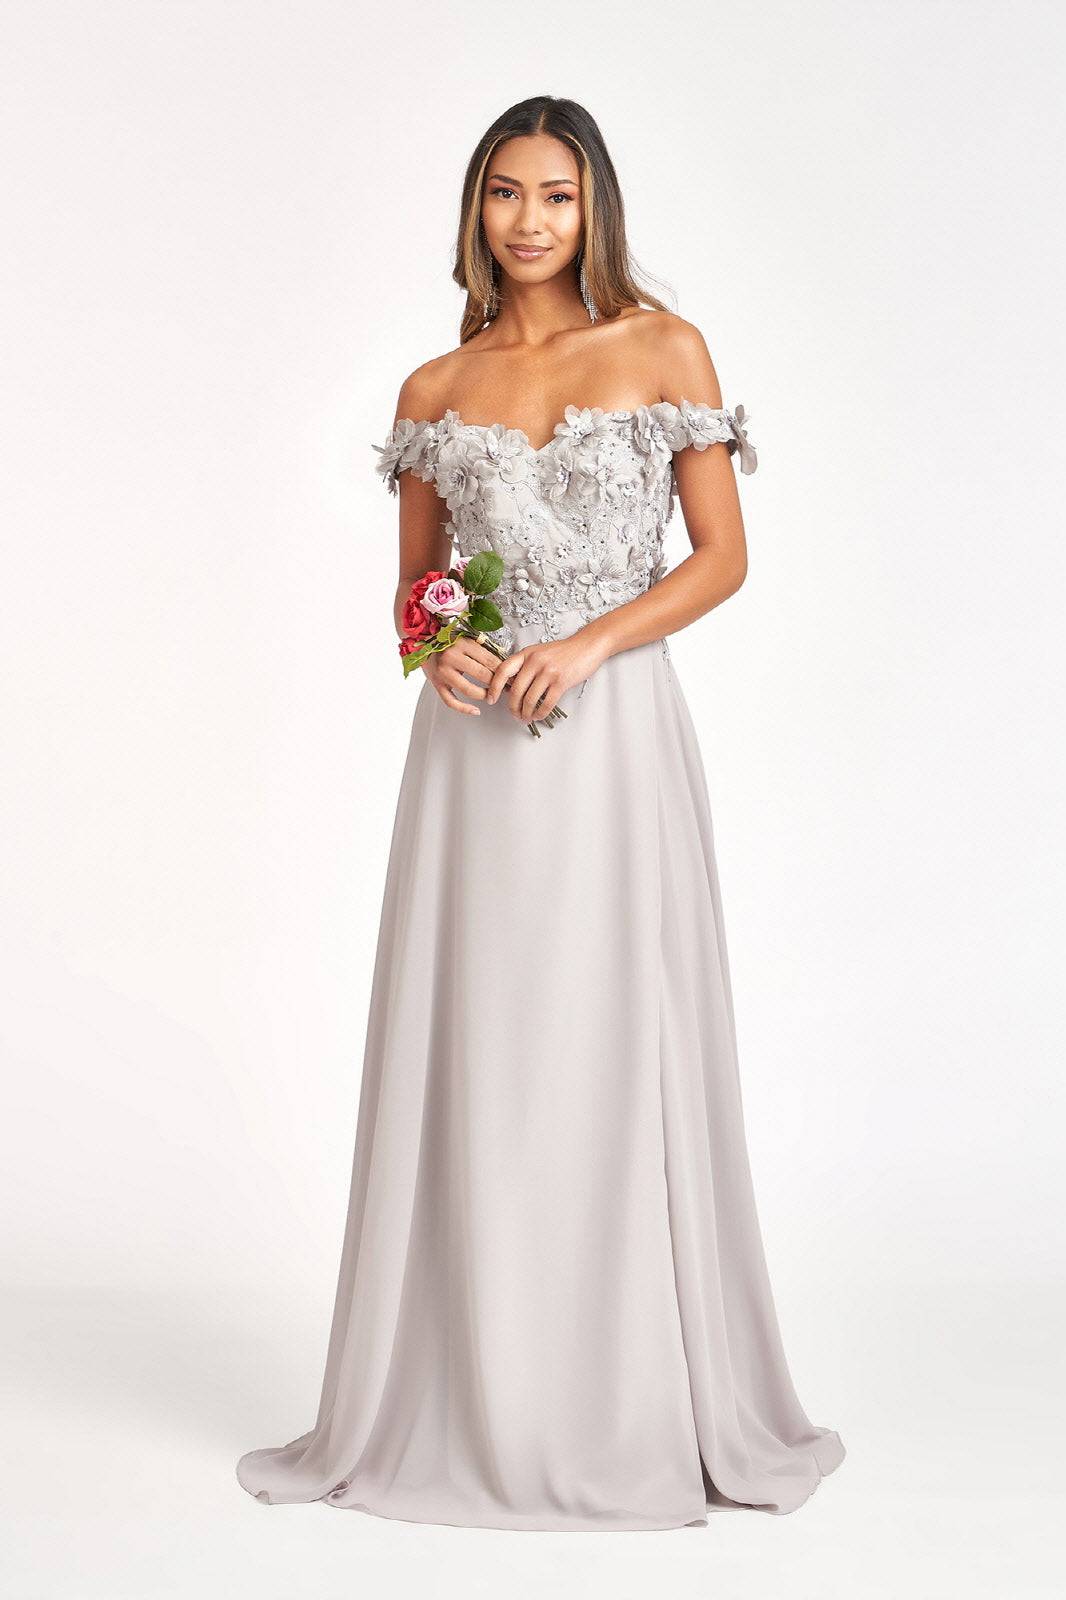 Minimalist Illusion Lace and Chiffon Wedding Dress - Promfy